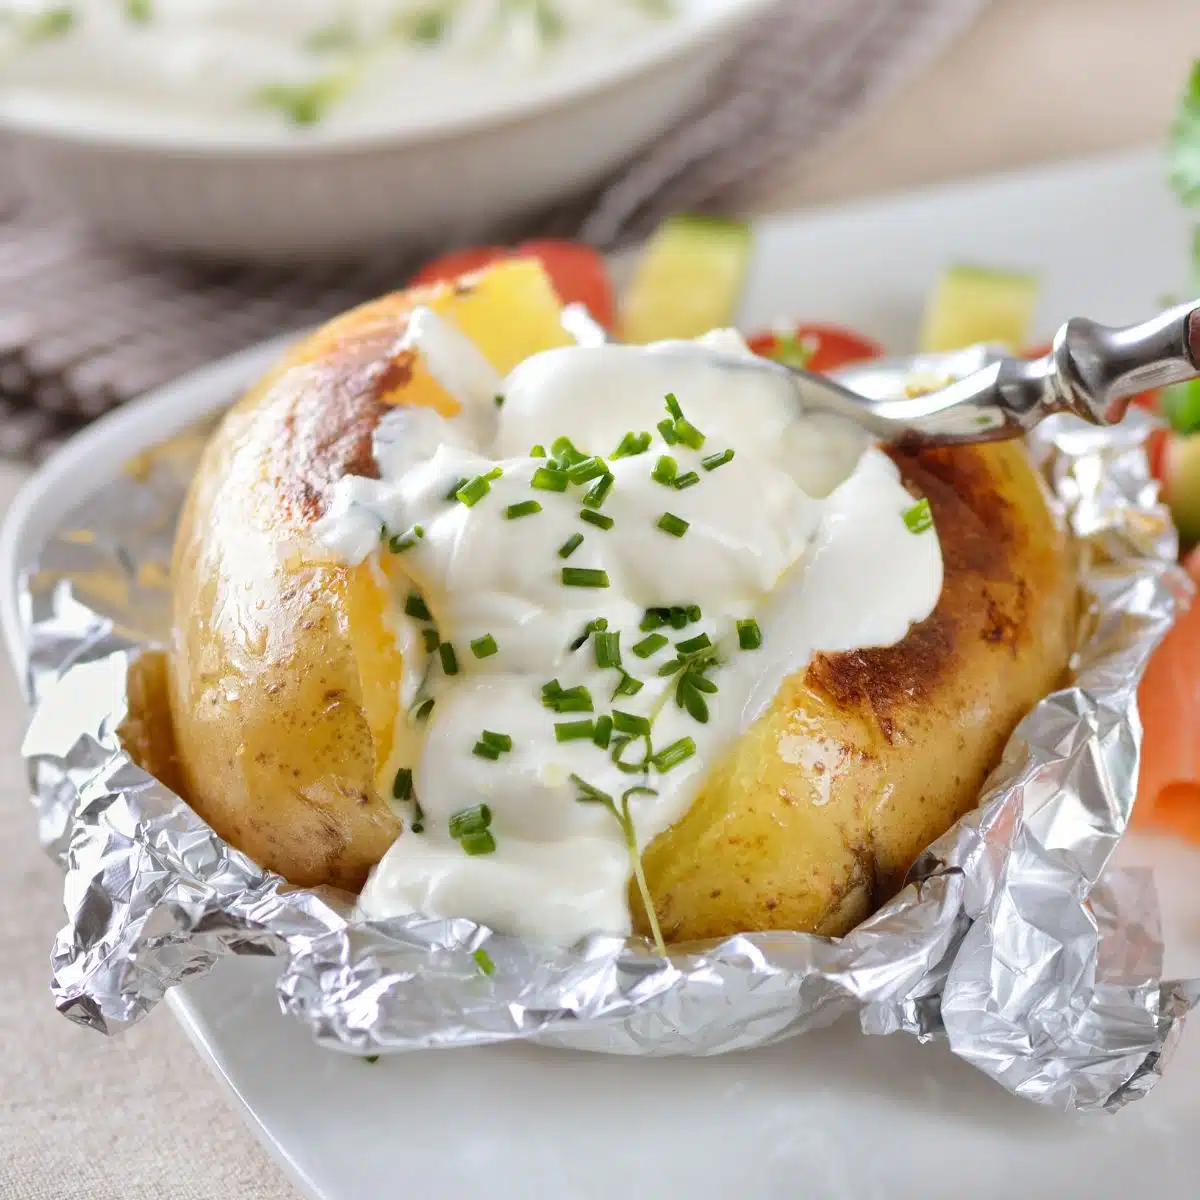 Immagine quadrata che mostra una patata al forno su un piatto bianco, con panna acida ed erba cipollina.